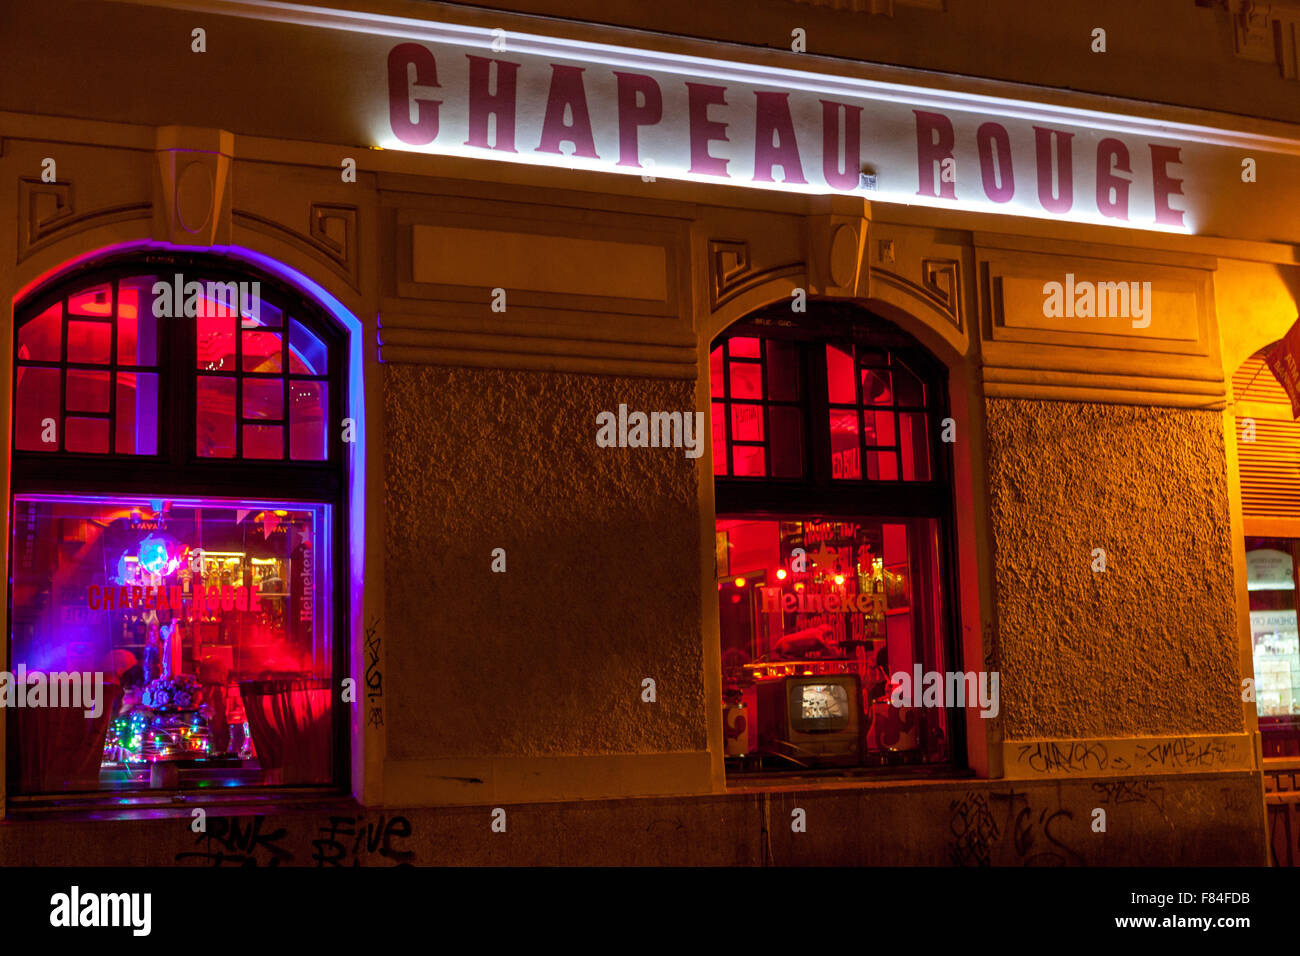 Prager Pub Chapeau Rouge Pub Nachtclub in der Nähe des Altstädter Ring. Stockfoto